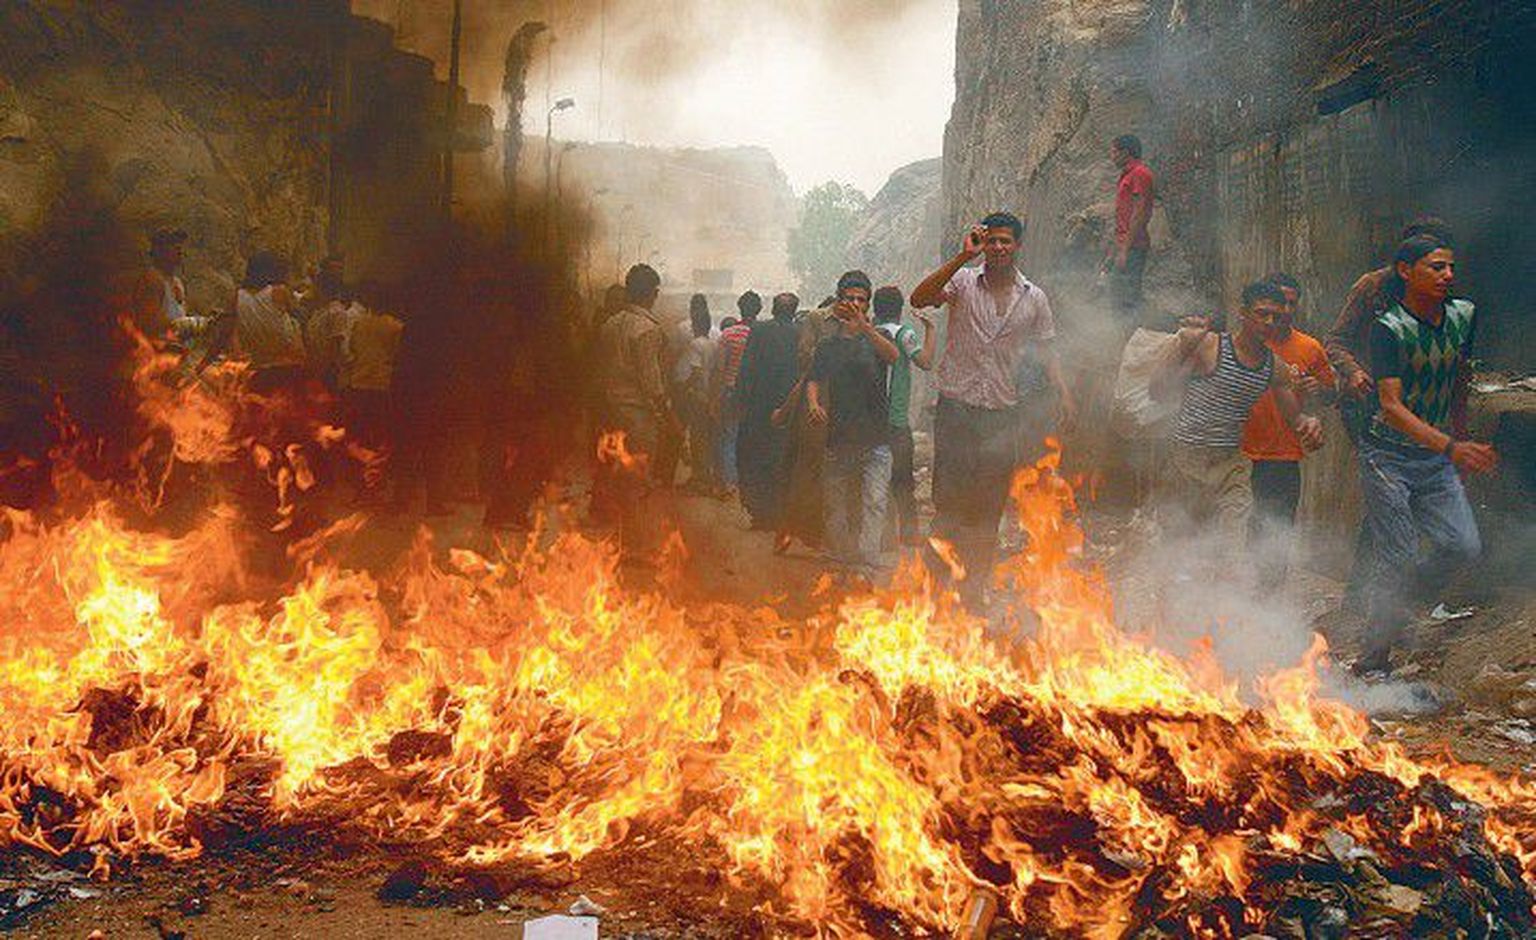 Борьба за жизнь свиней в Каире: бушующий огонь должен задержать силы правопорядка, которые разгоняют демонстрантов, протестующих против решения властей уничтожить свиней.